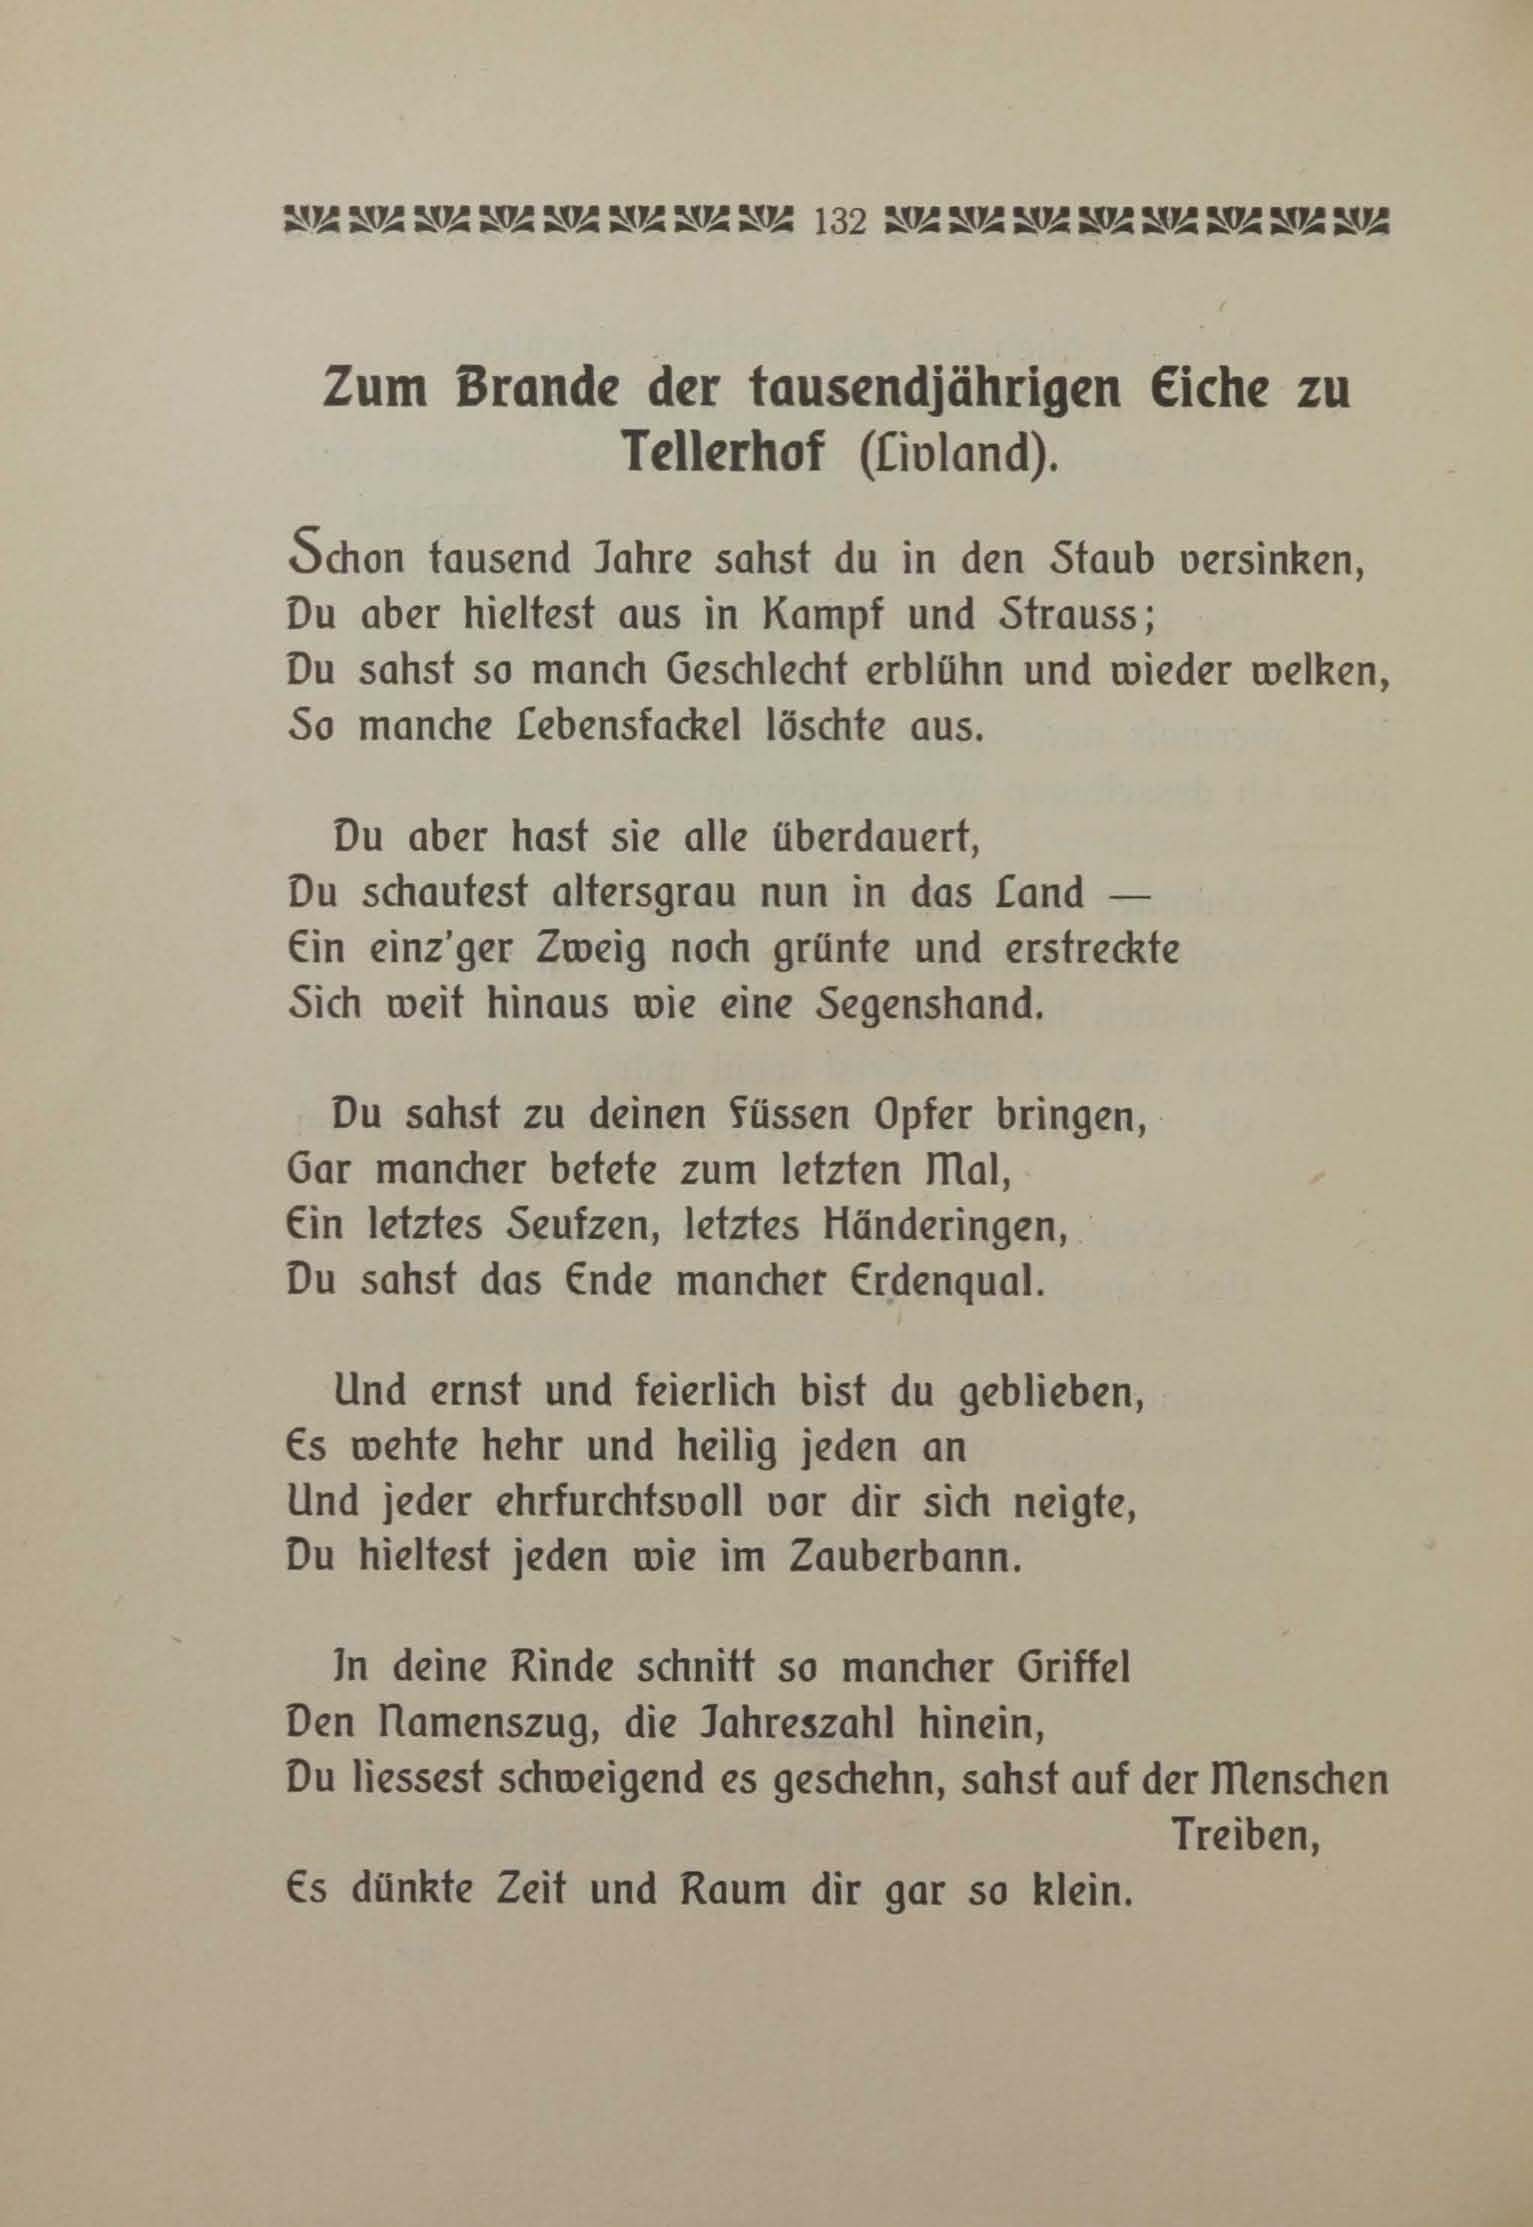 Zum Brande der tausendjährigen Eiche zu Tellerhof (1906) | 1. (132) Основной текст